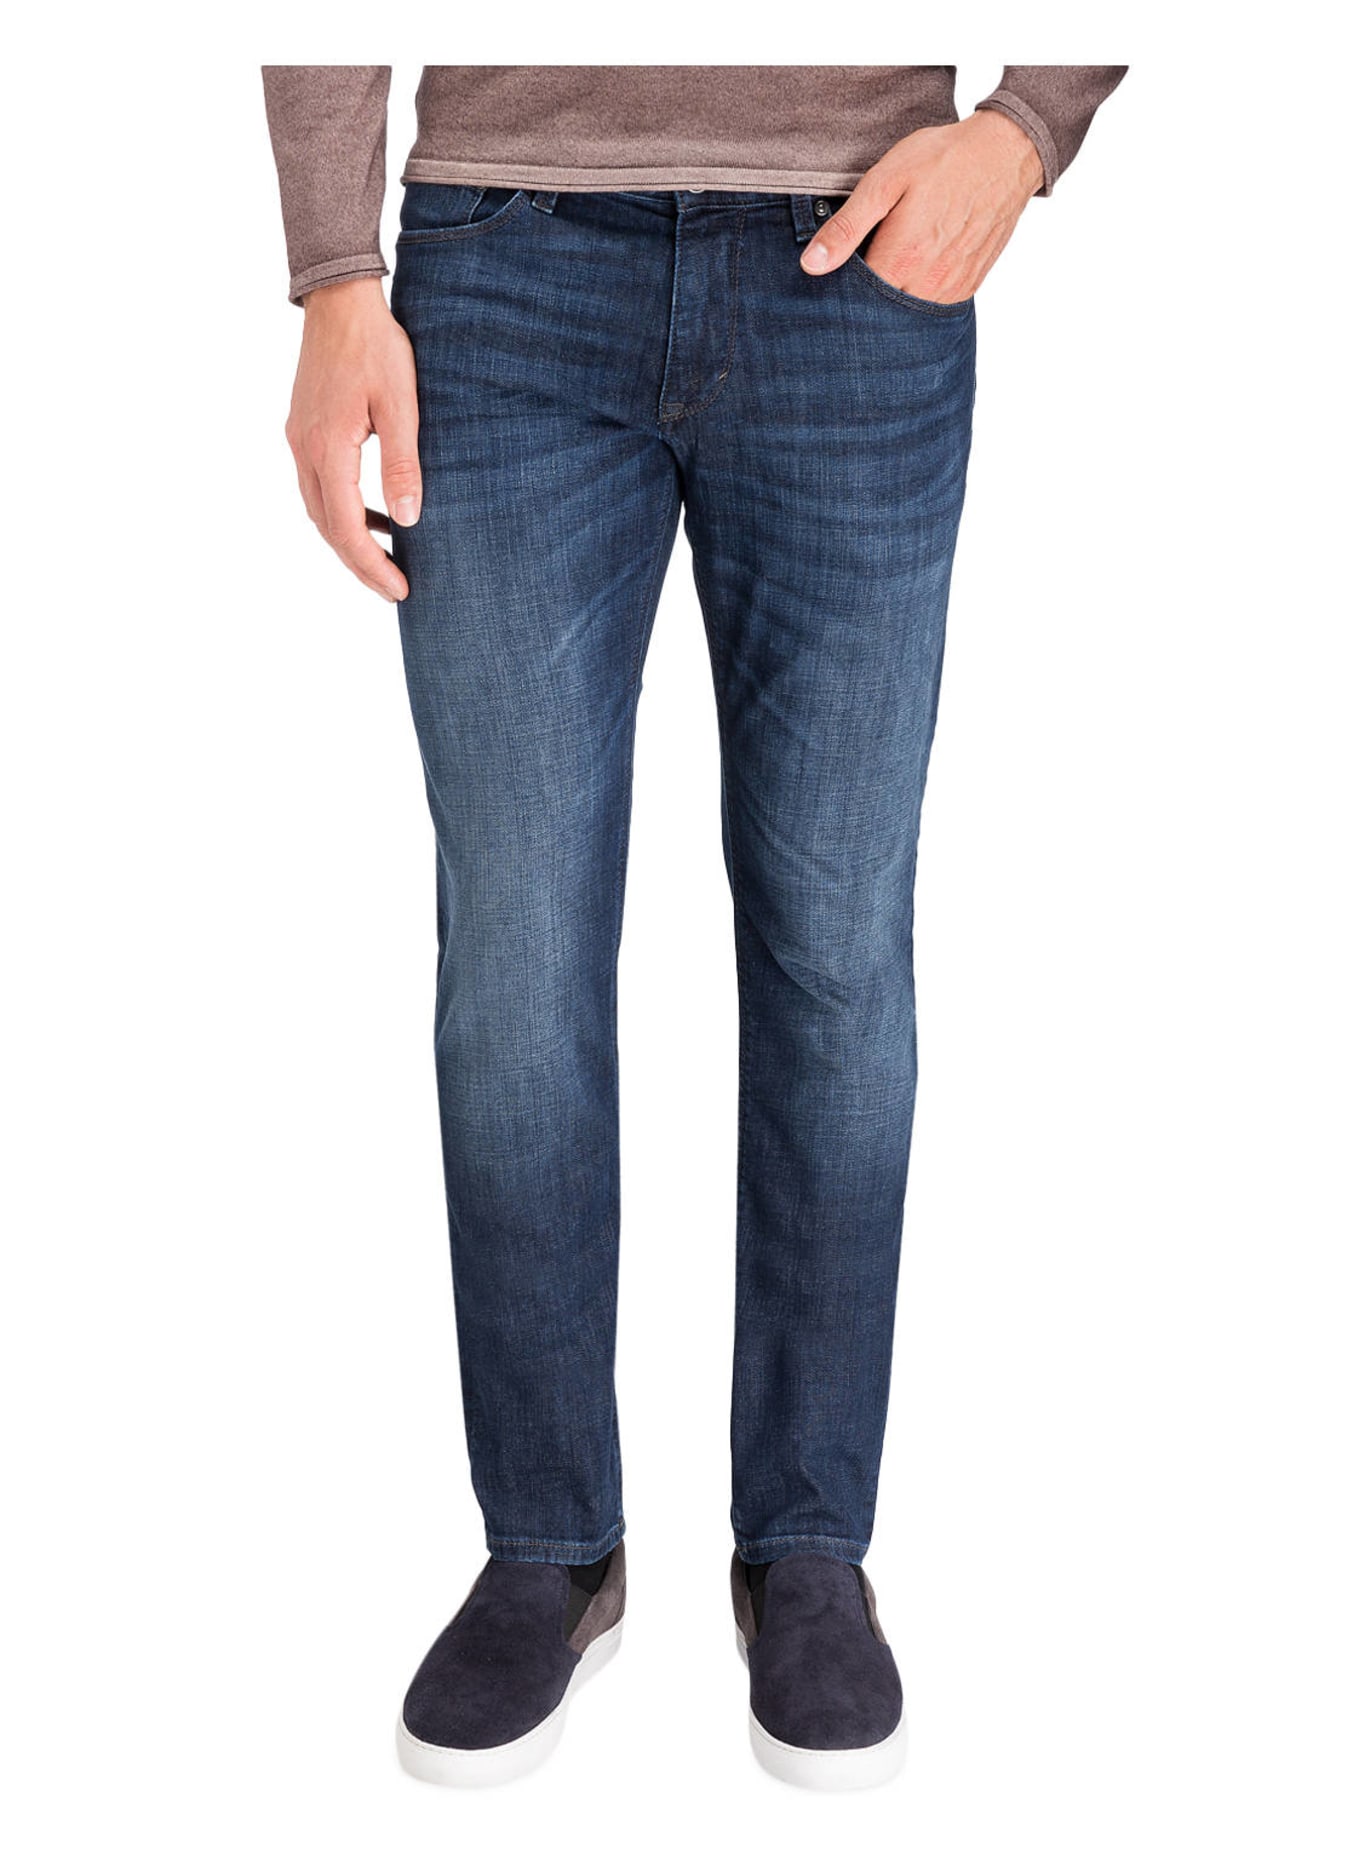 JOOP! Jeans STEPHEN Slim Fit, Farbe: 415 NAVY (Bild 2)